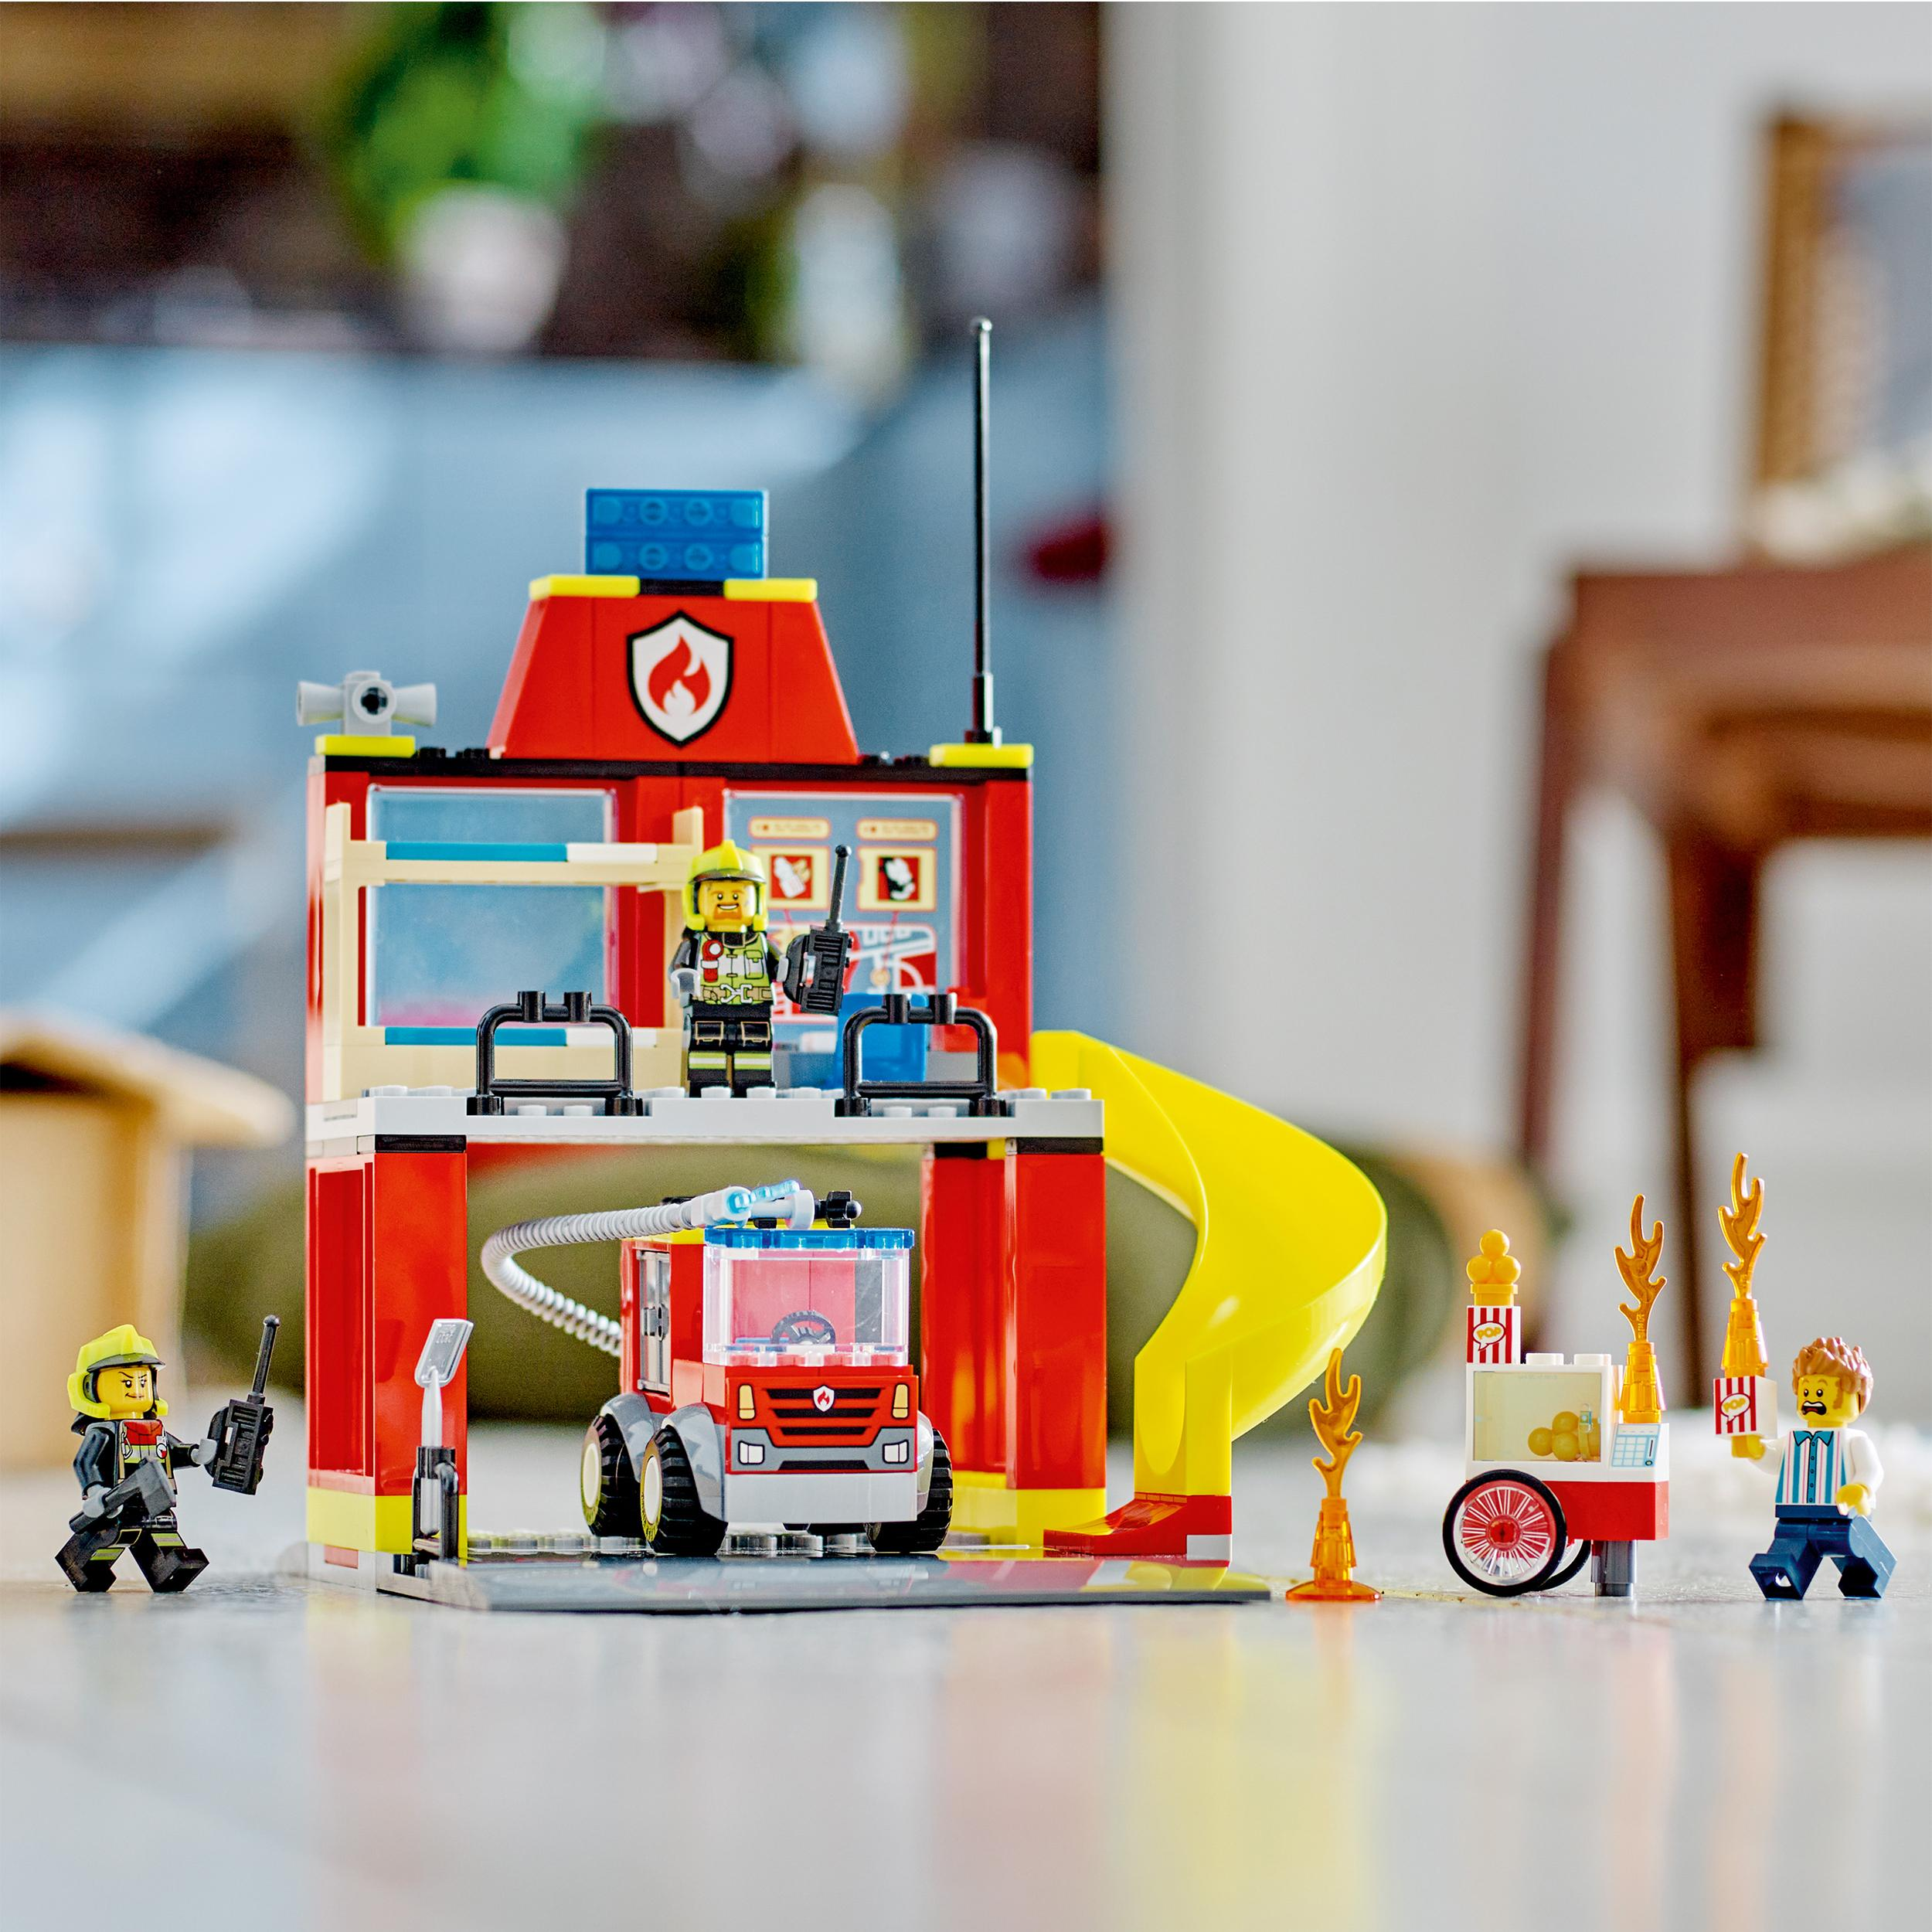 Mehrfarbig 60375 City Feuerwehrstation LEGO und Löschauto Bausatz,